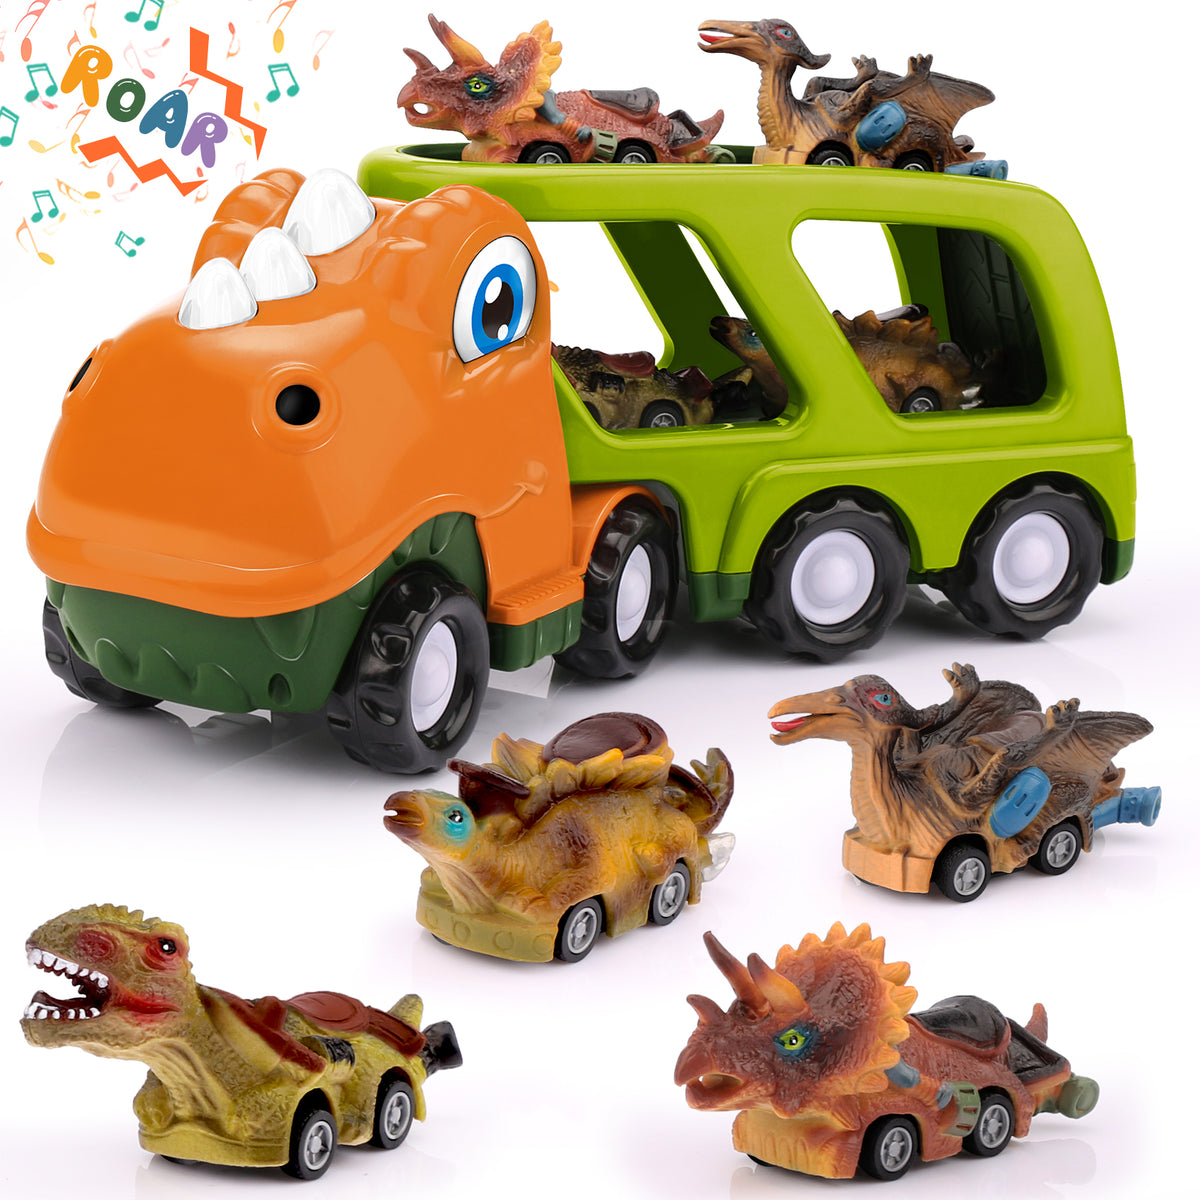 Nicmore Dinosaur Cars